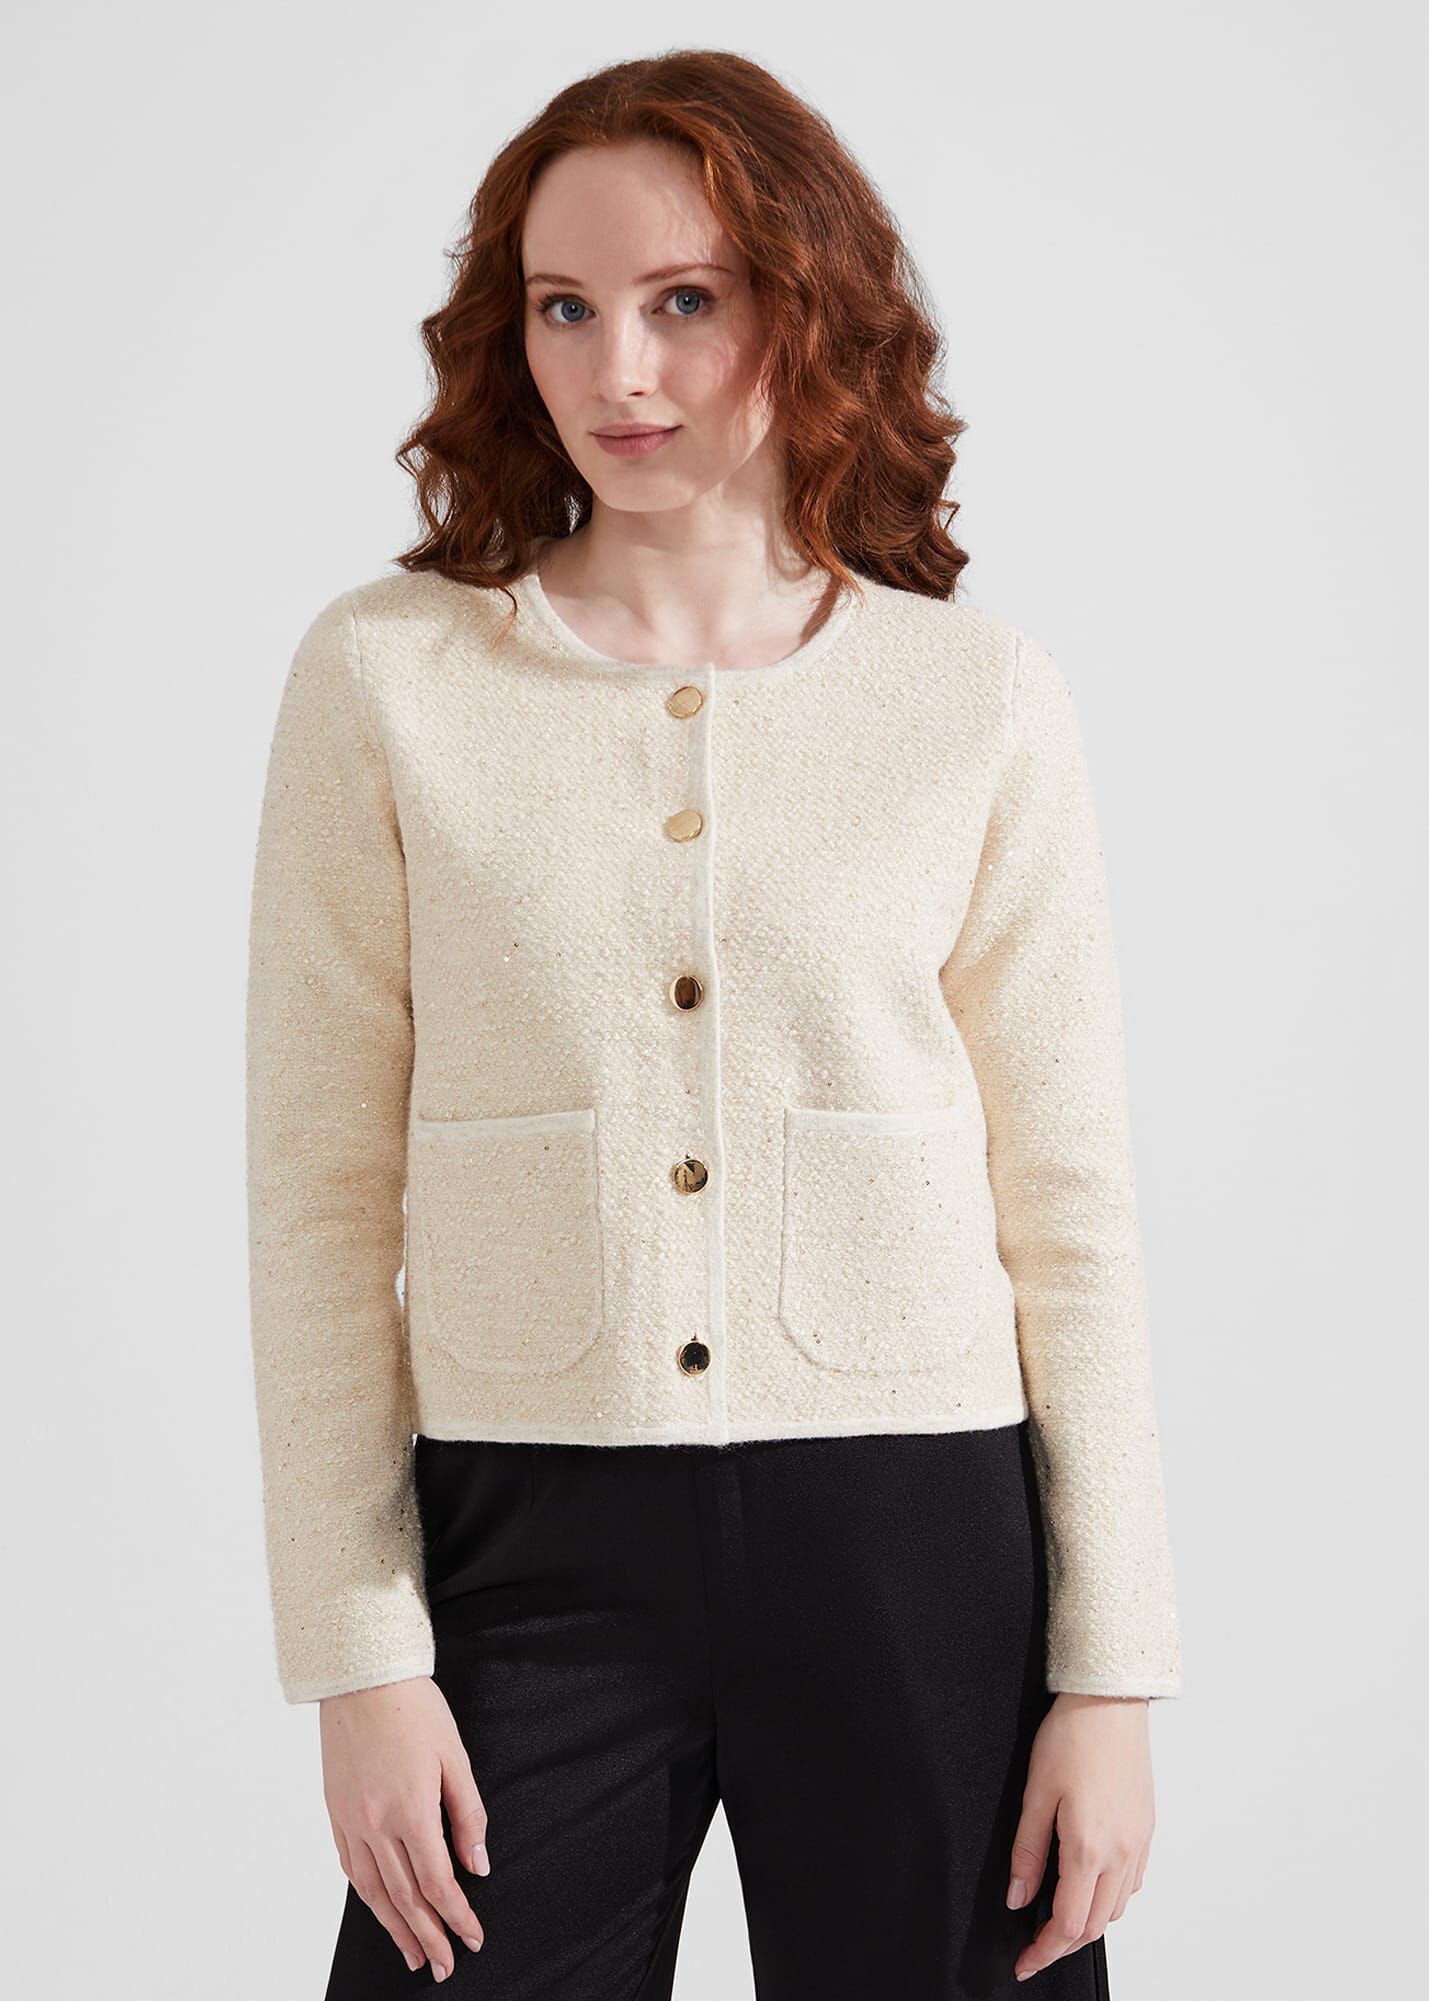 Coats & Jackets | Women's Winter Coats & Jackets | Hobbs |